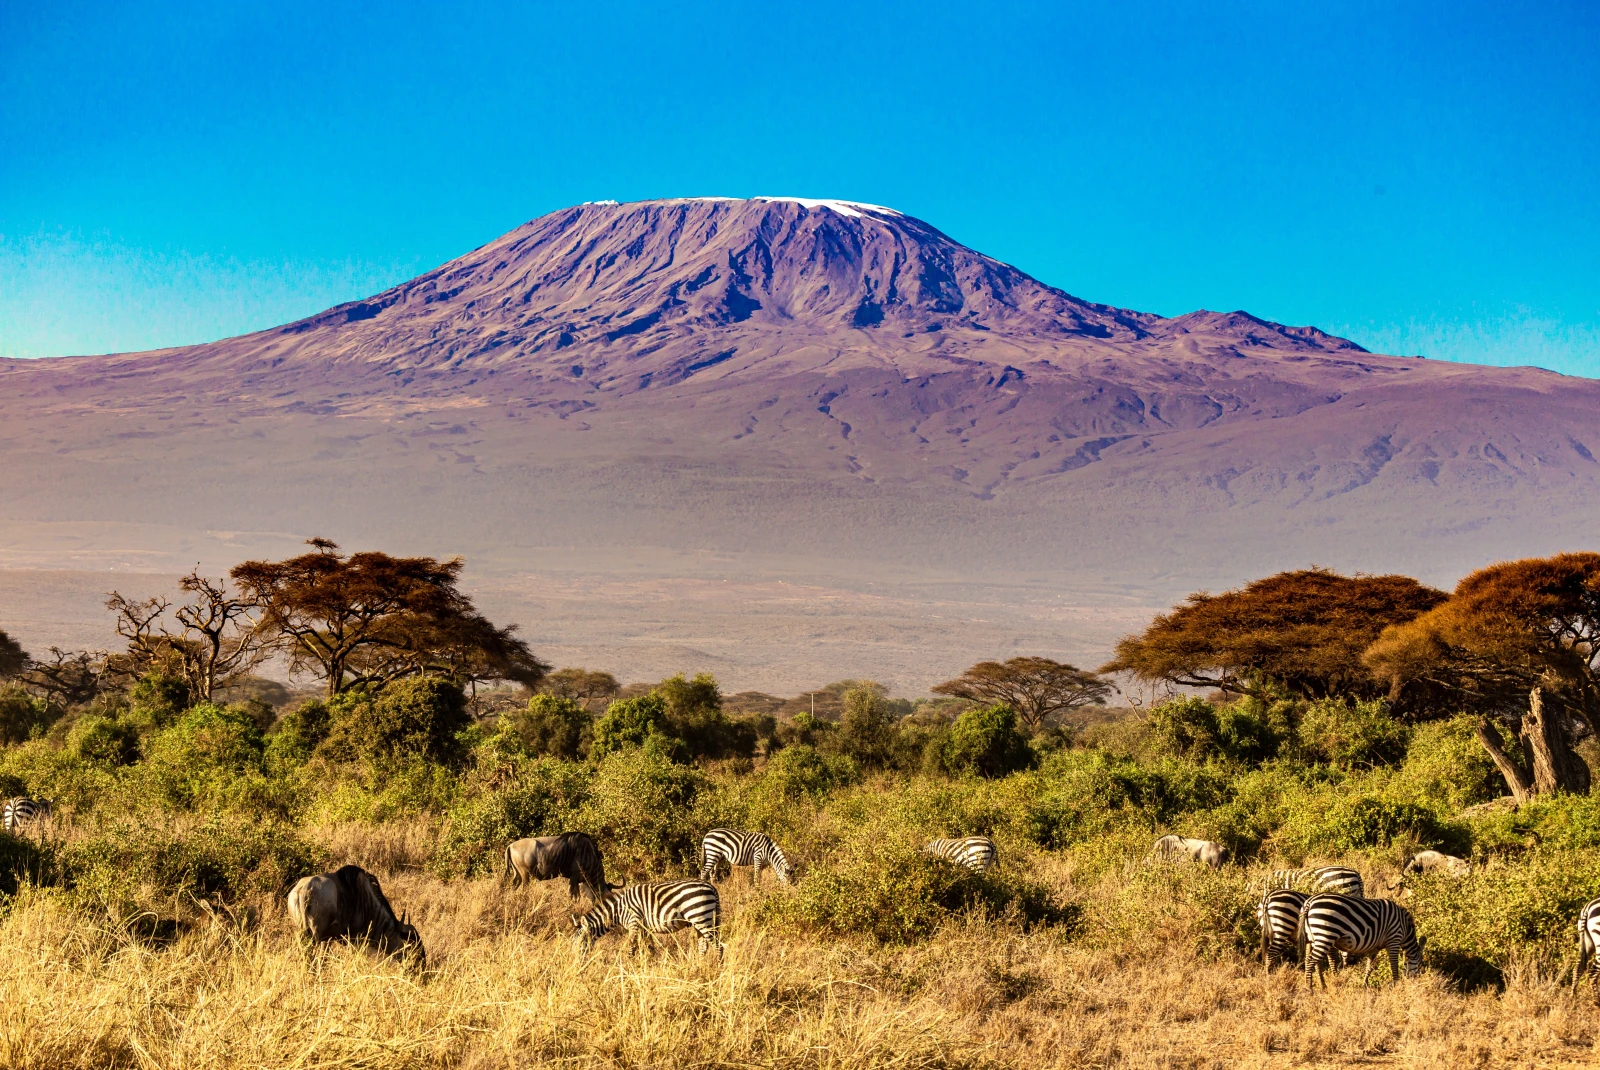 Kilimanjaro in Tanzania